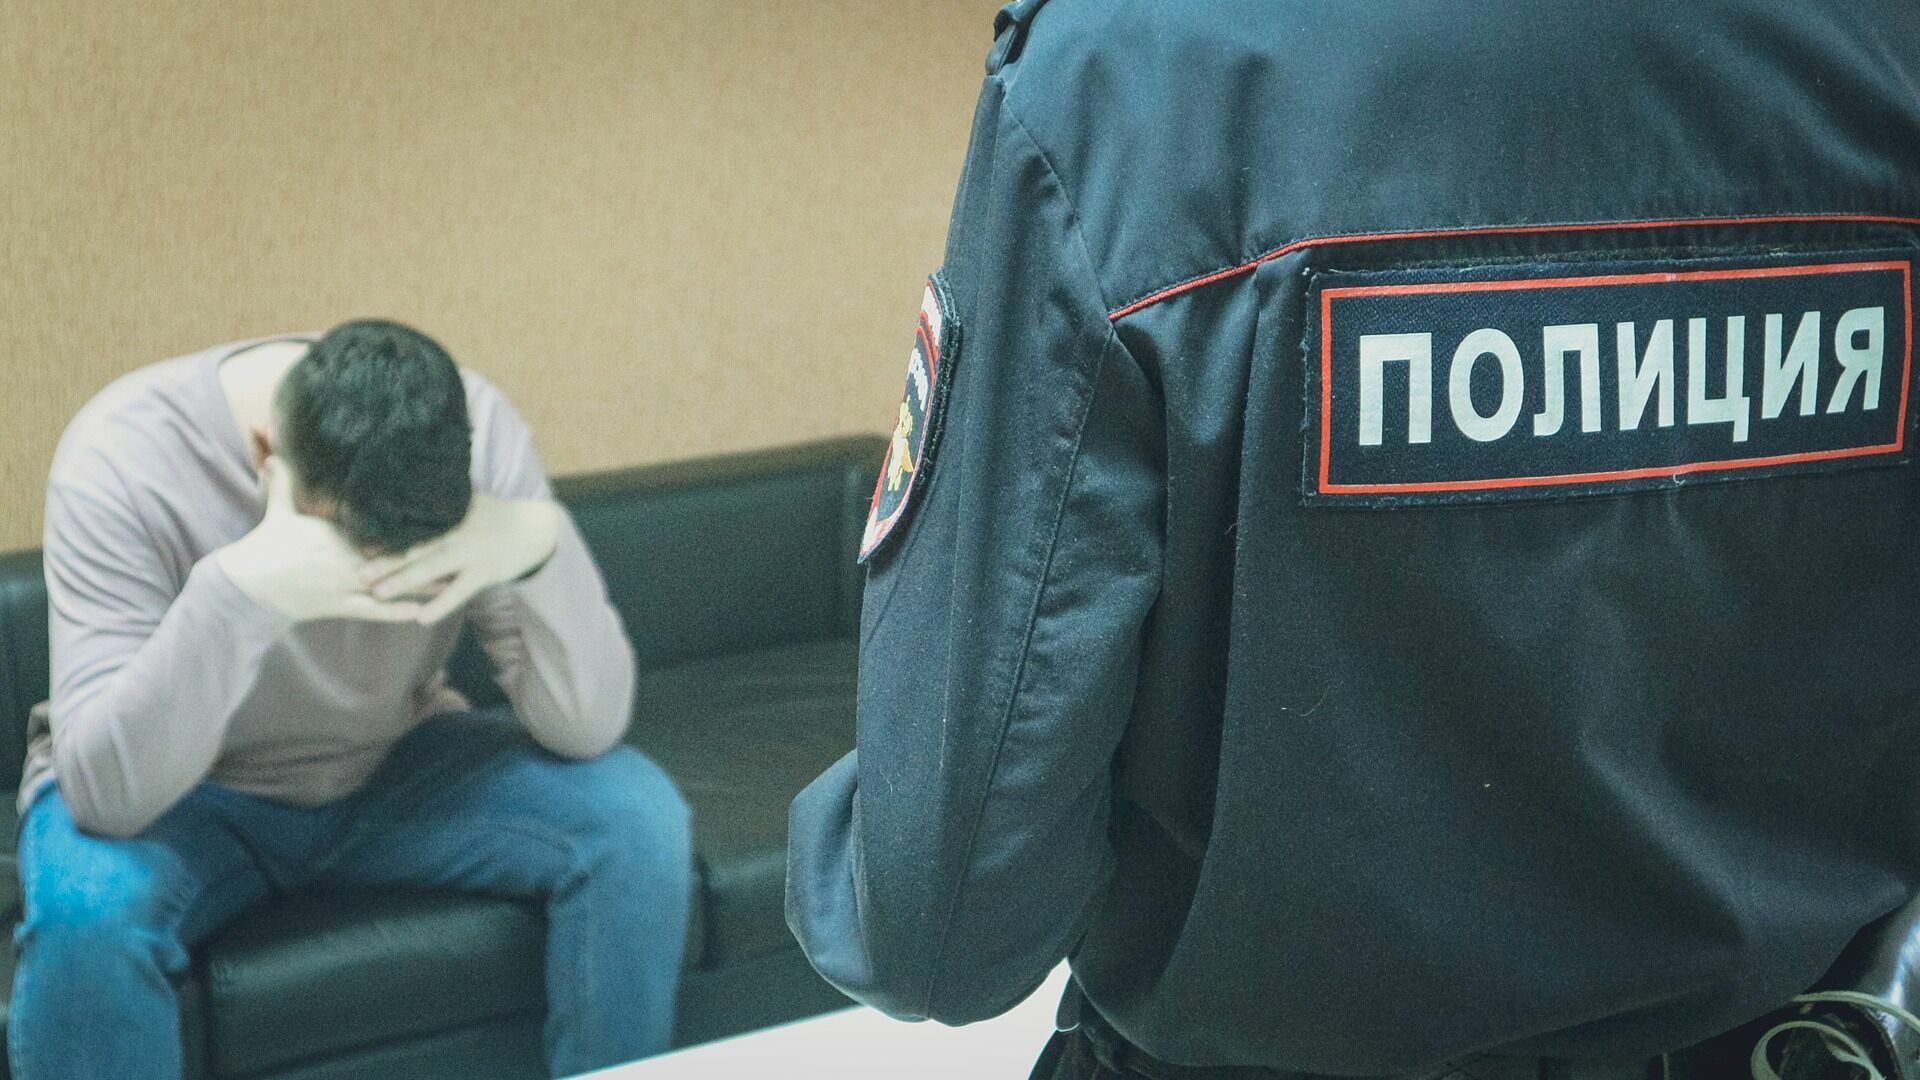 Экс-сотрудника университета осудят за мошенничество в Нижнем Новгороде